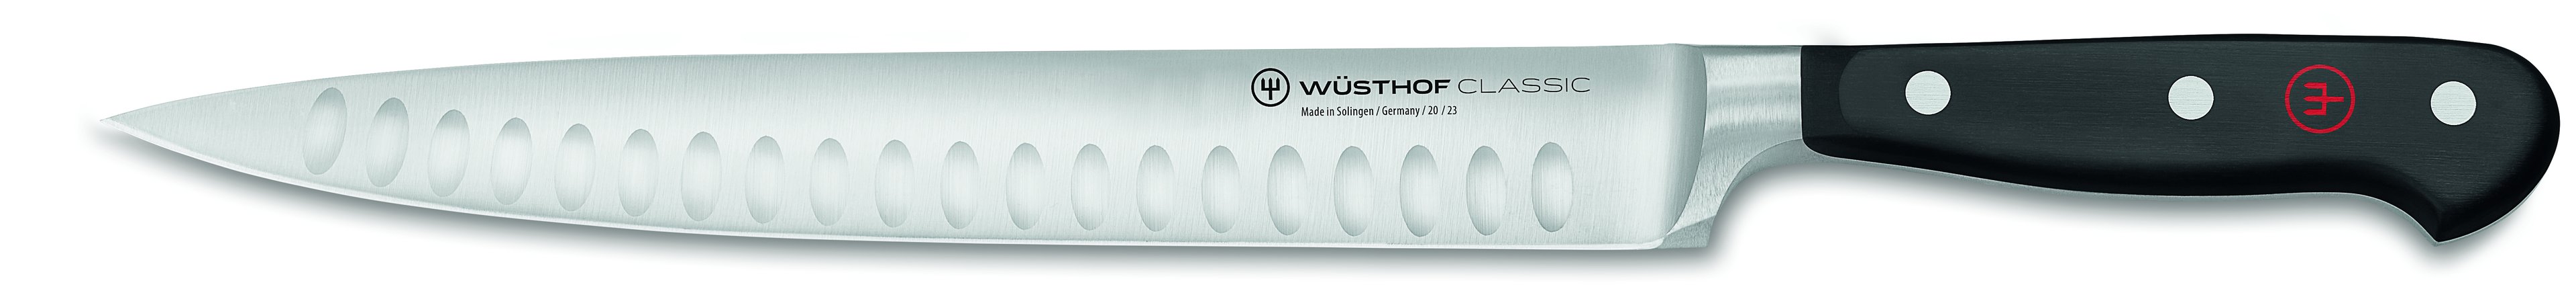 Wüsthof Classic Schinkenmesser 23